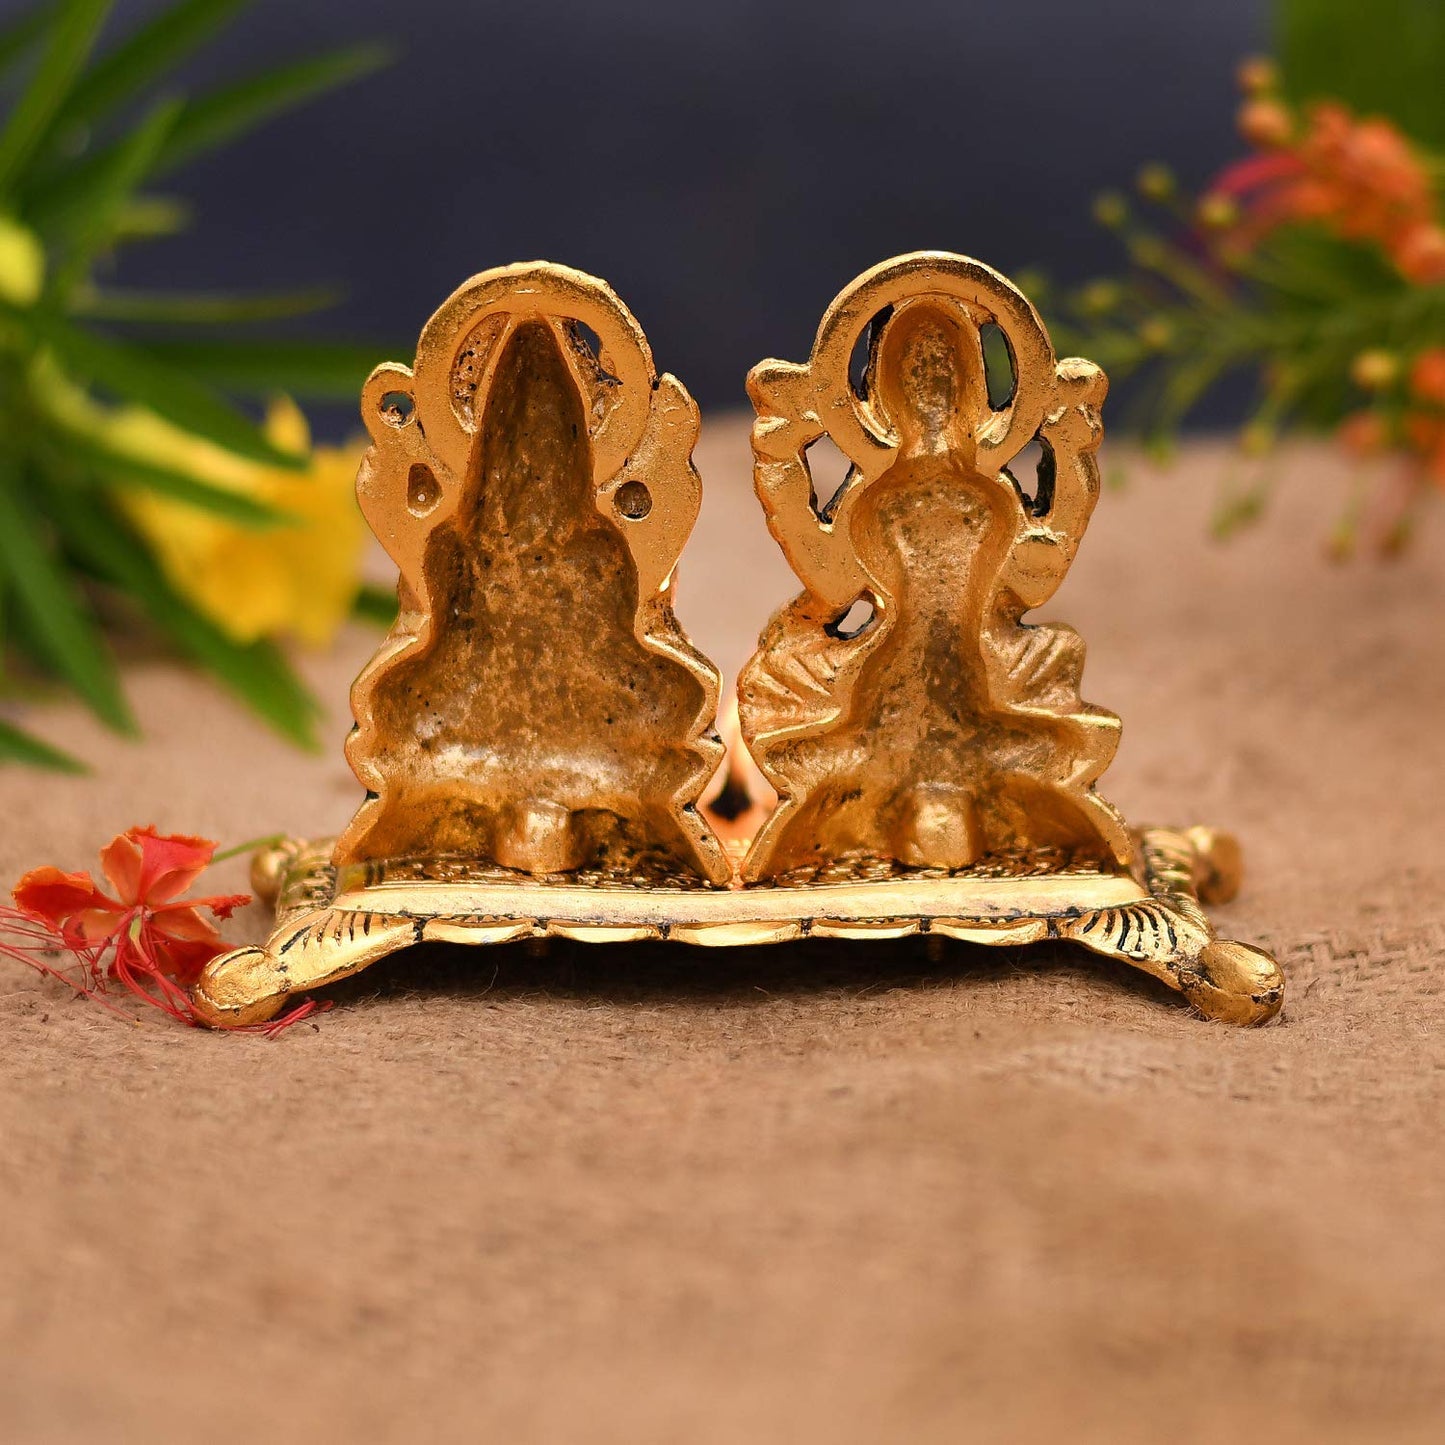 DesiDiya® Laxmi Ganesh Idol Showpiece with Diya/Lord Idol with Diya/Diwali Home Decoration Items/Lakshmi Ganesh for Diwali Puja